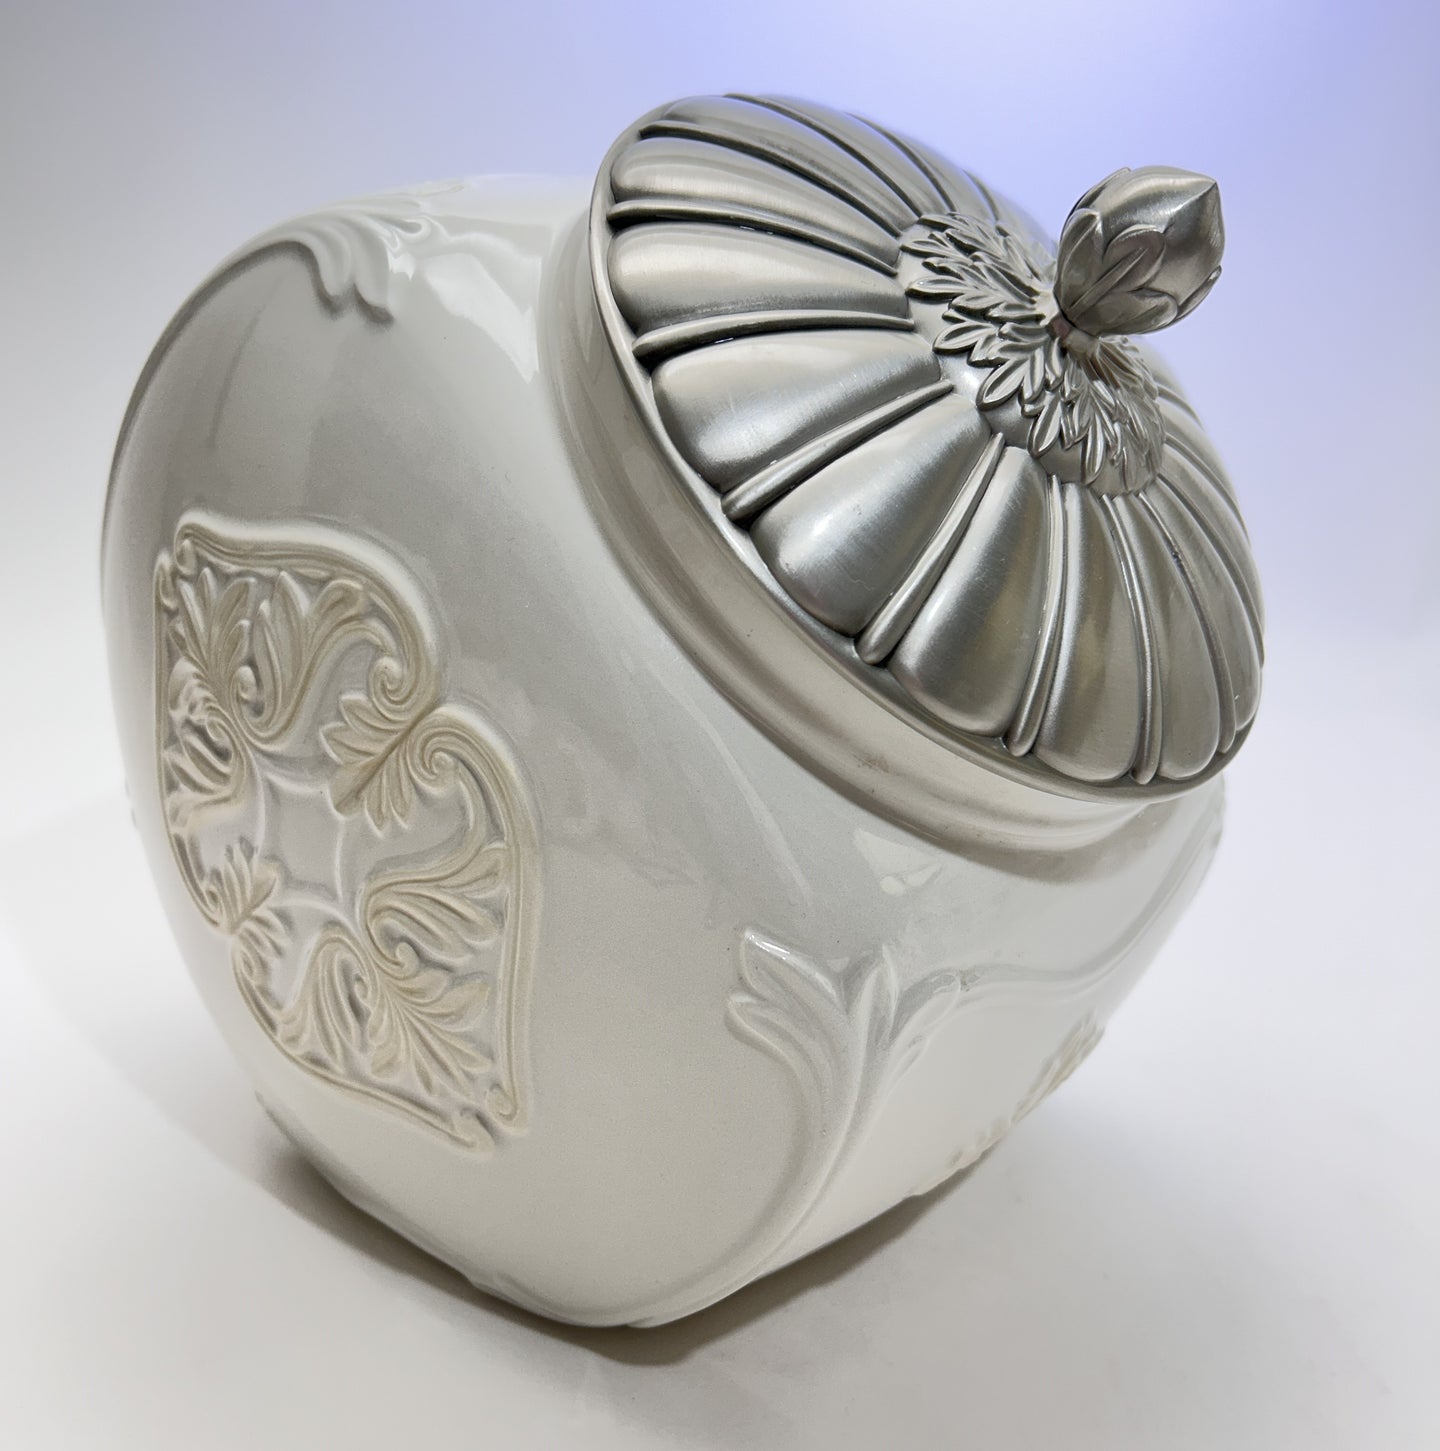 Lenox Butler's Pantry Embossed Cookie Jar and Metal Lid, 2000-2015